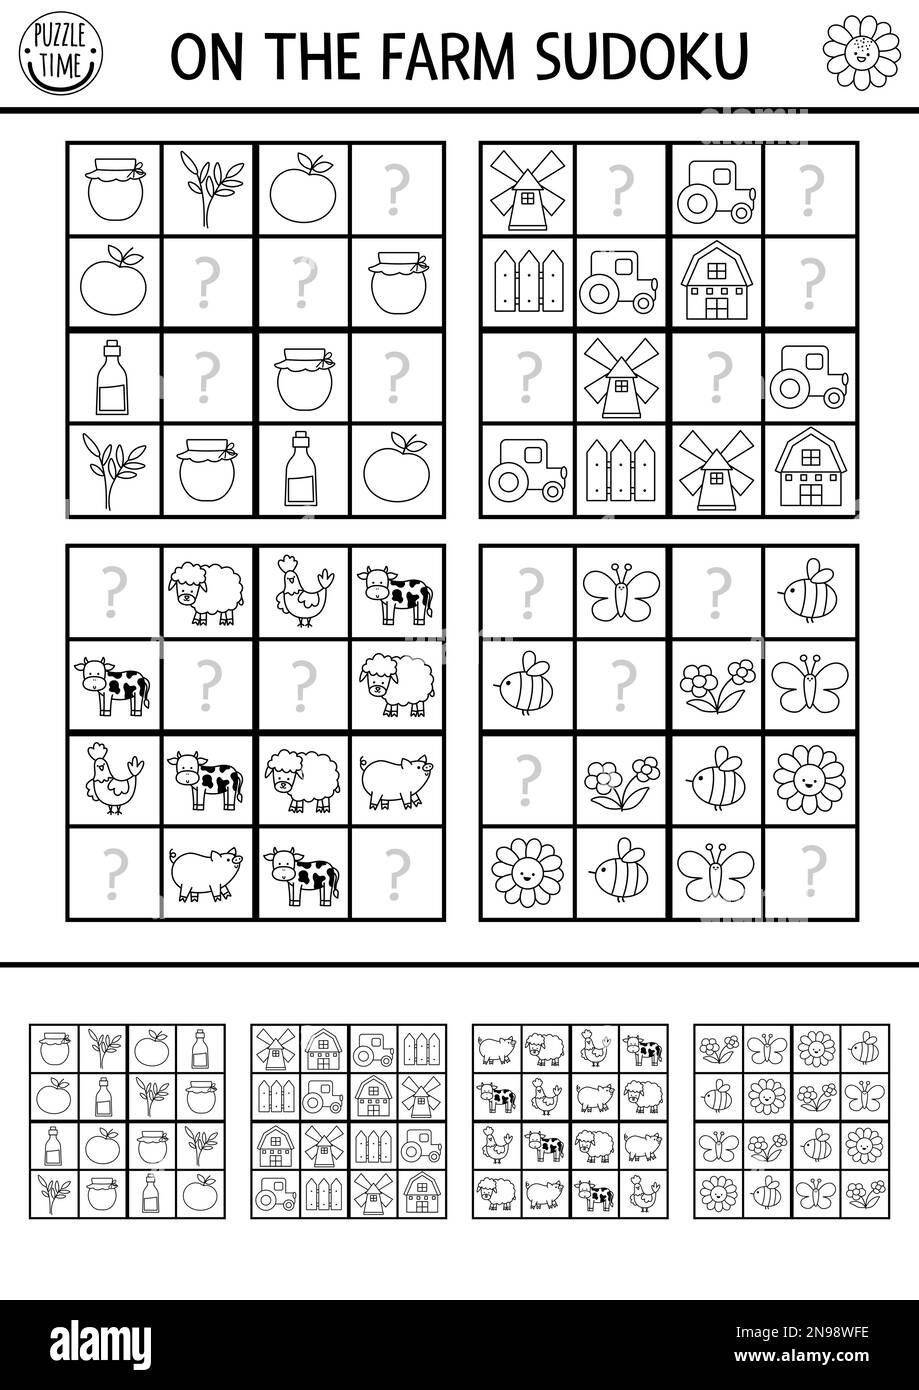 Vektorfarm Sudoku Schwarz-Weiß-Puzzle für Kinder mit Bildern. Einfaches Quiz auf dem Bauernhof mit fehlenden Elementen. Bildungsaktivität oder Ausmalseite w Stock Vektor